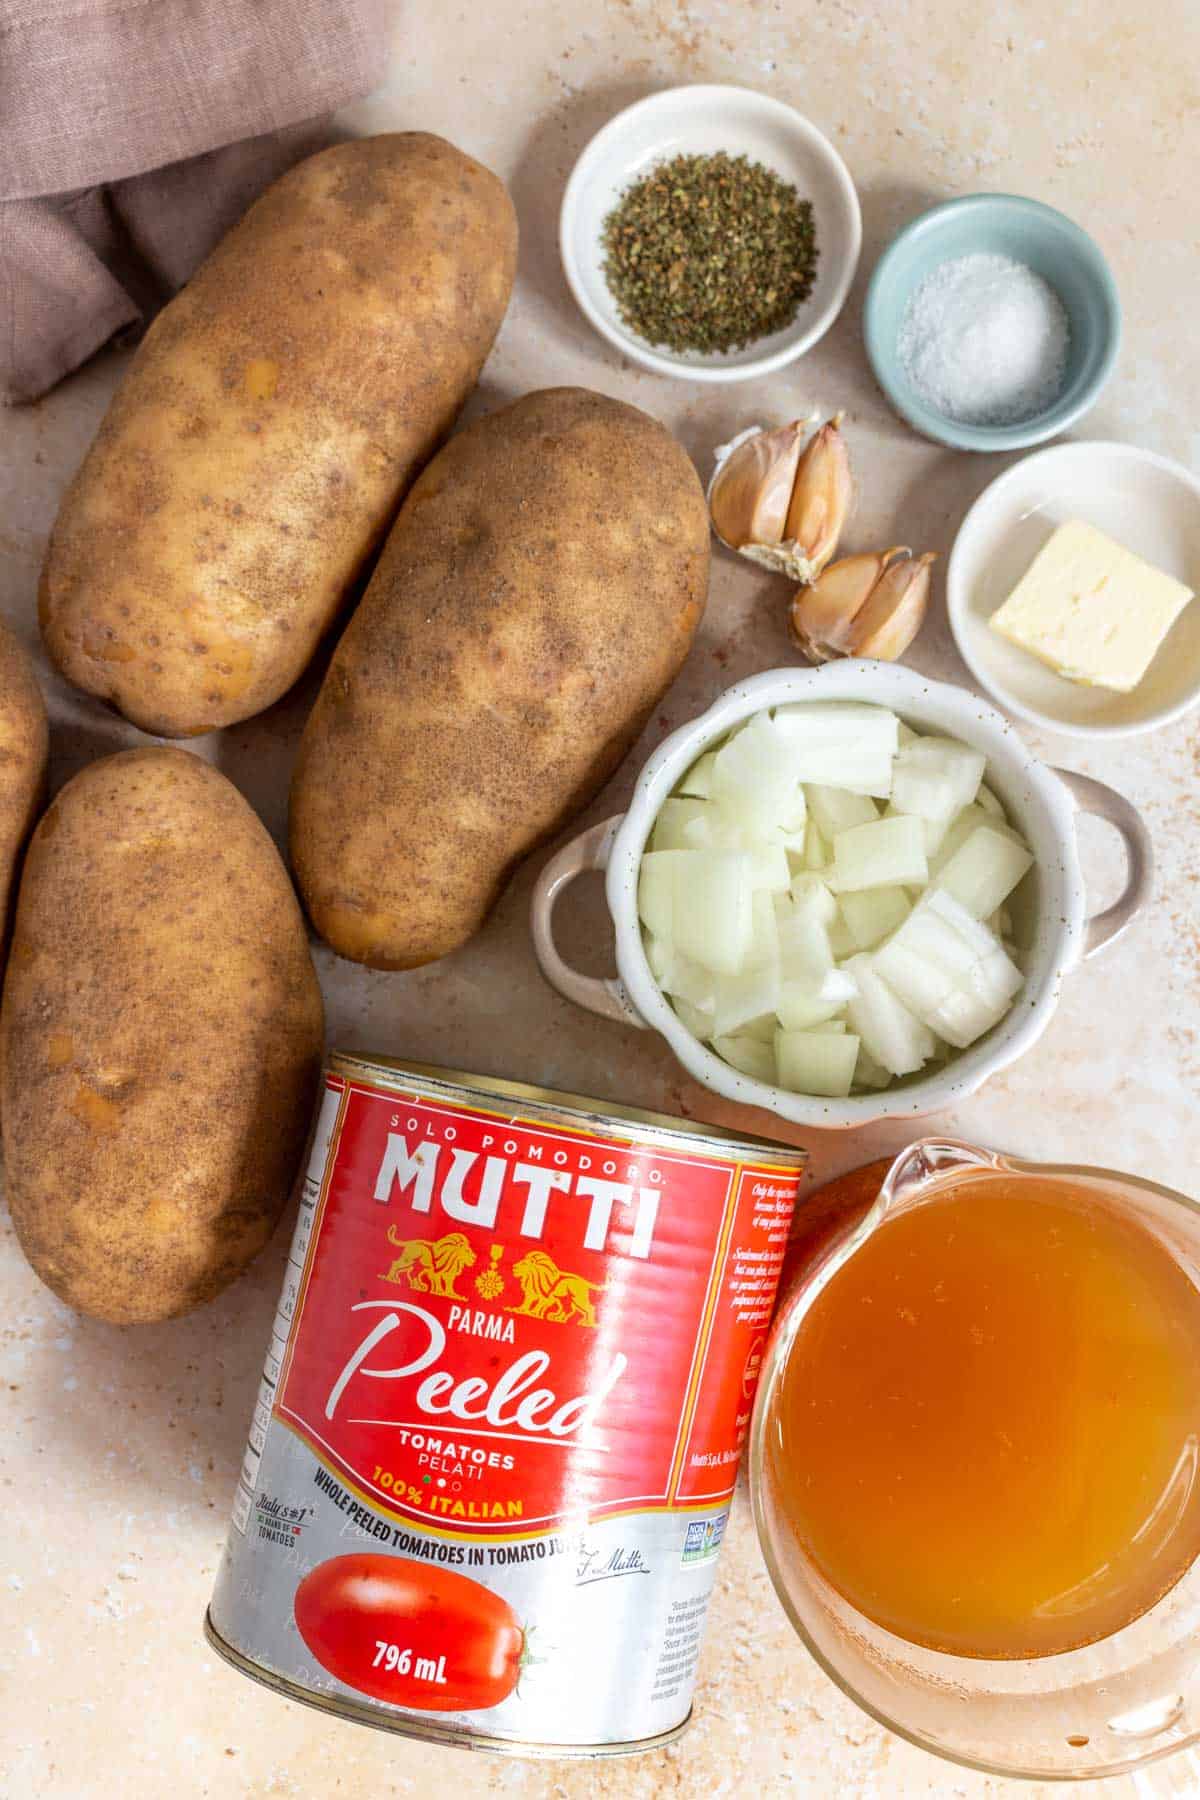 Ingredients needed to make potato tomato soup.